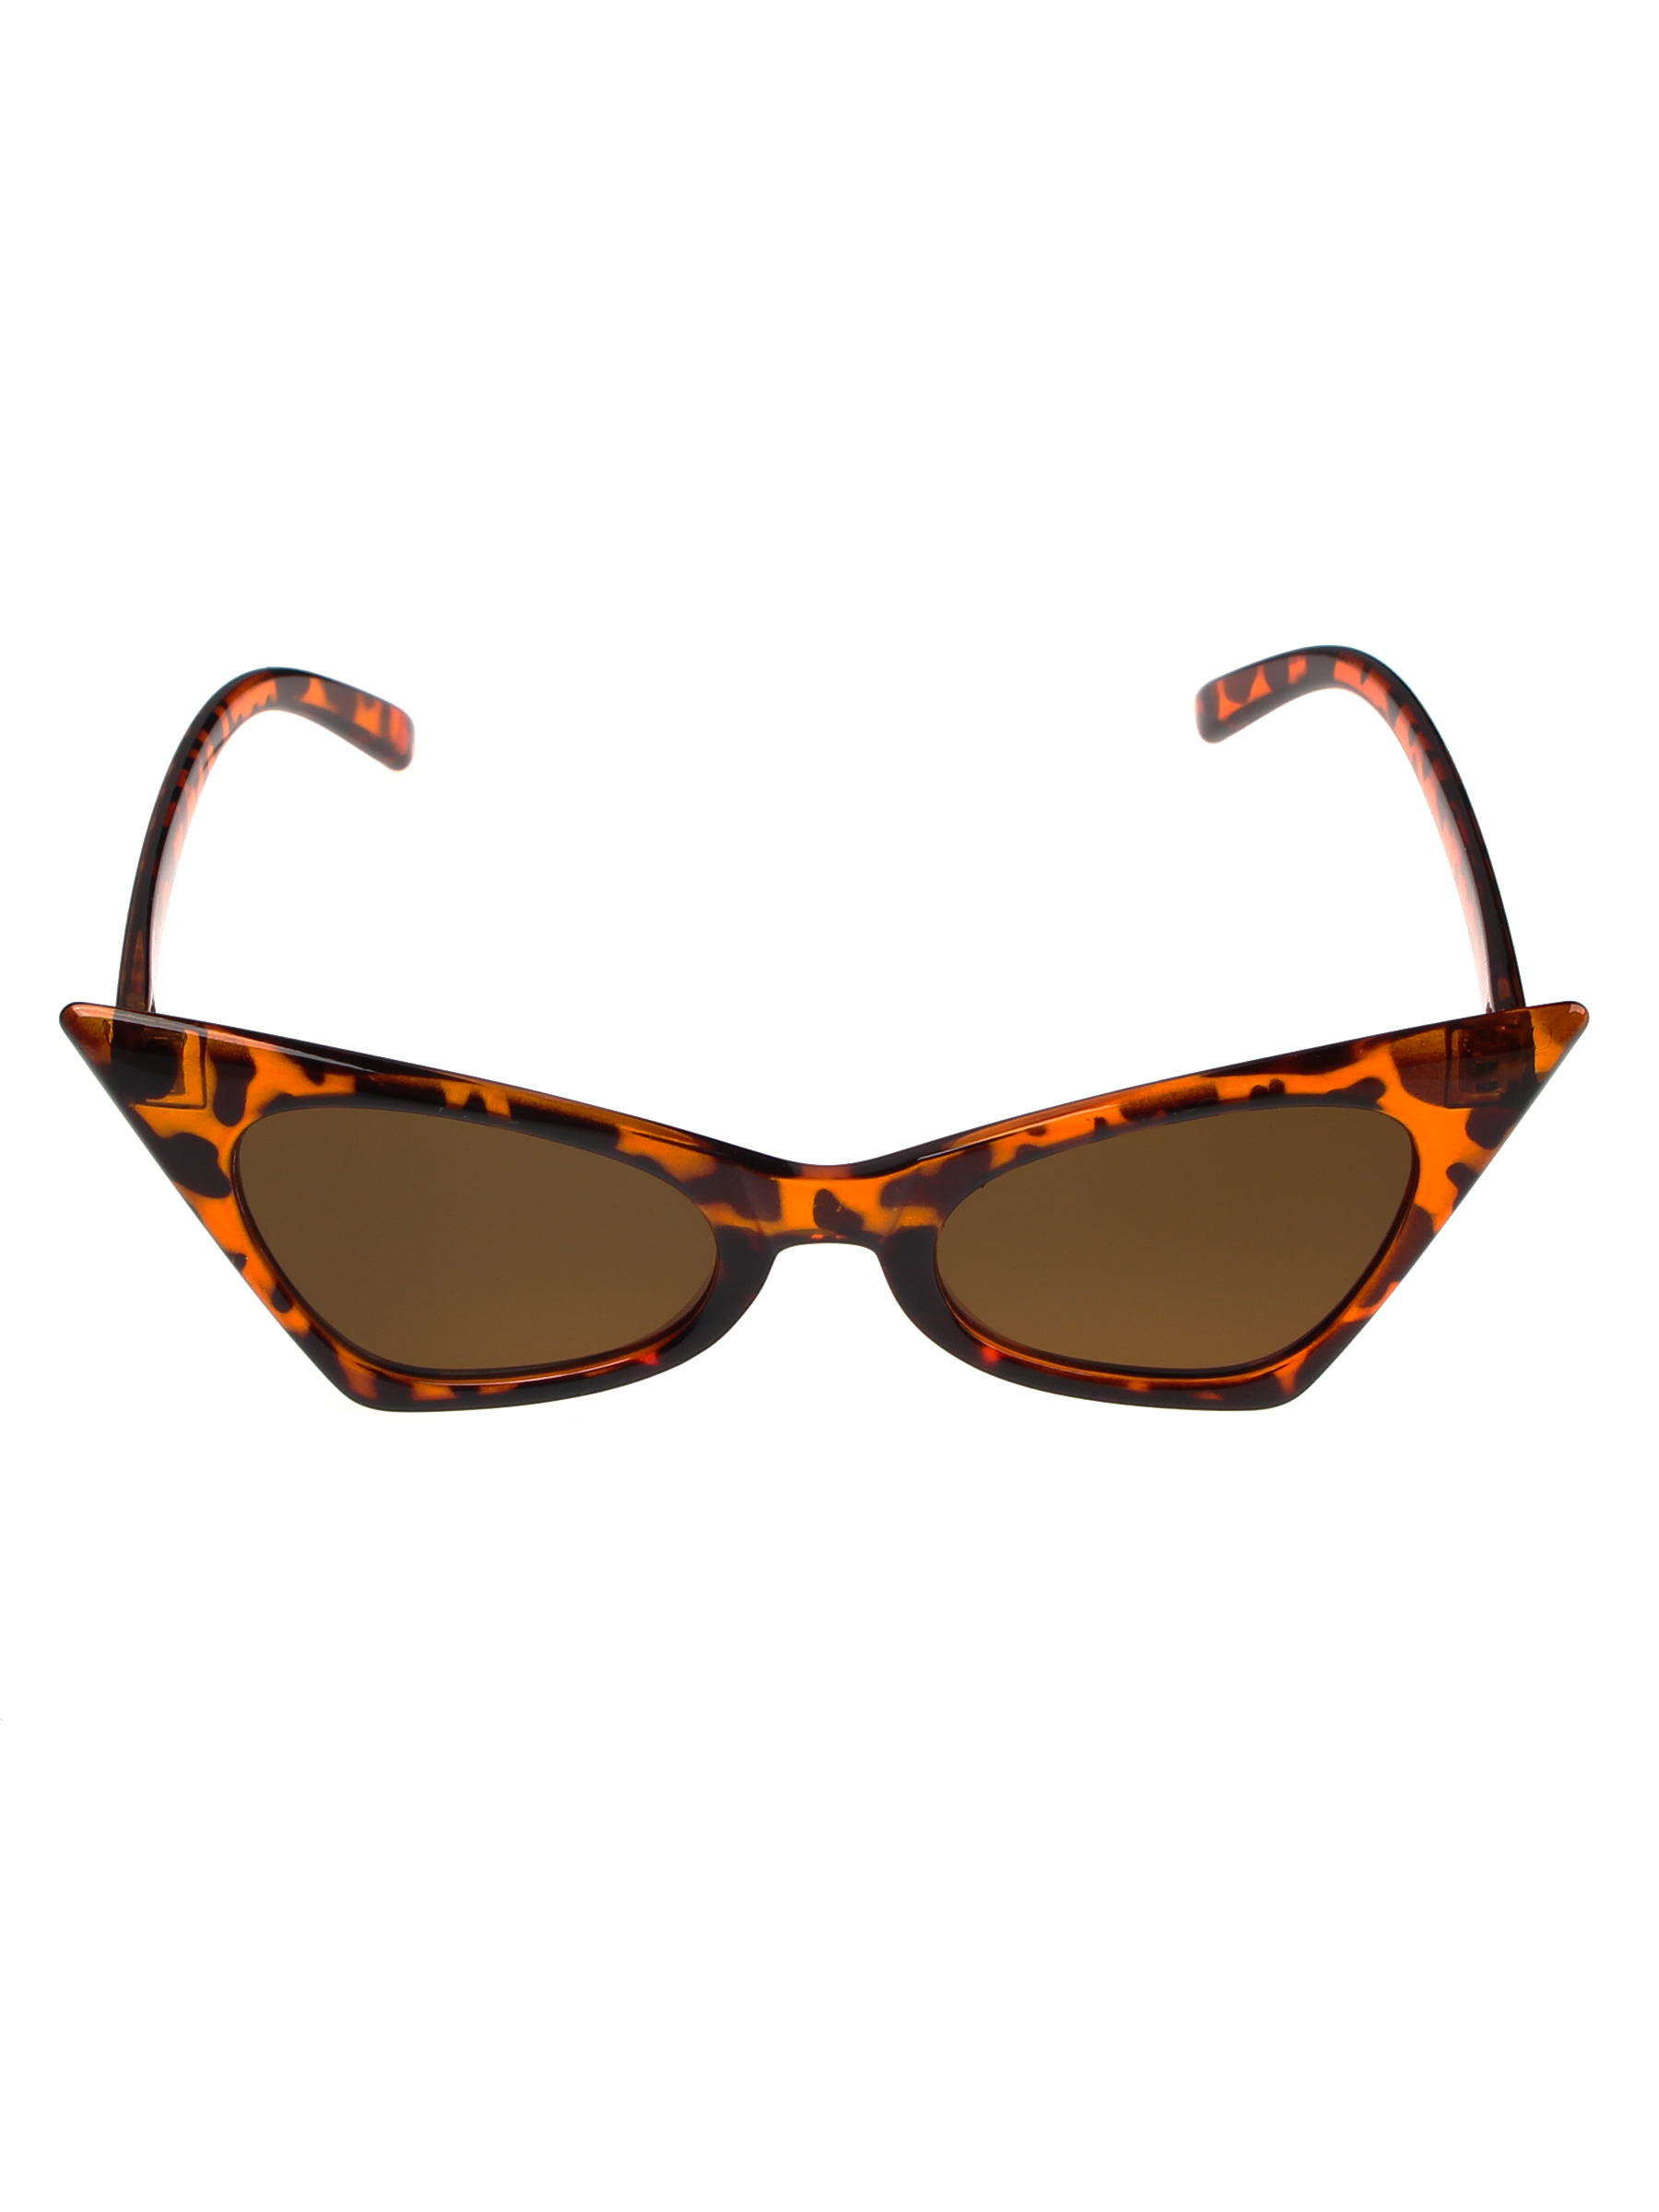 Солнцезащитные очки женские Pretty Mania MDP010 коричневые